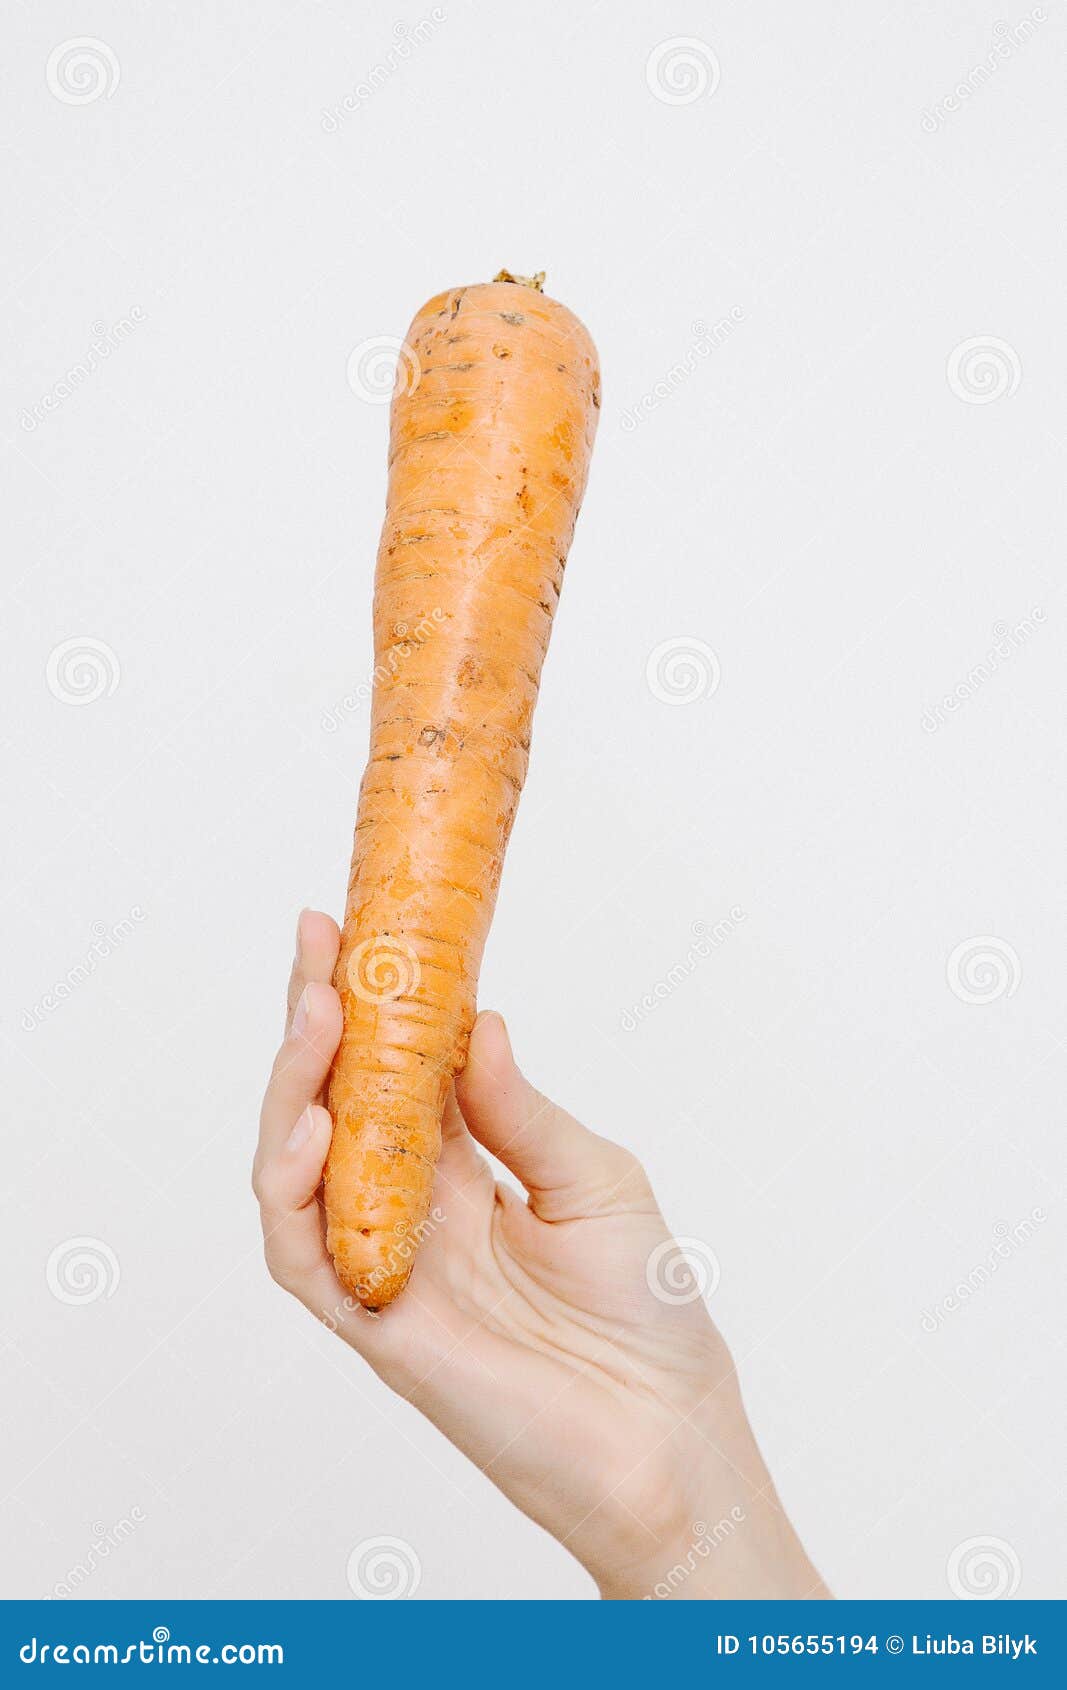 морковка в жопе мужа фото 85